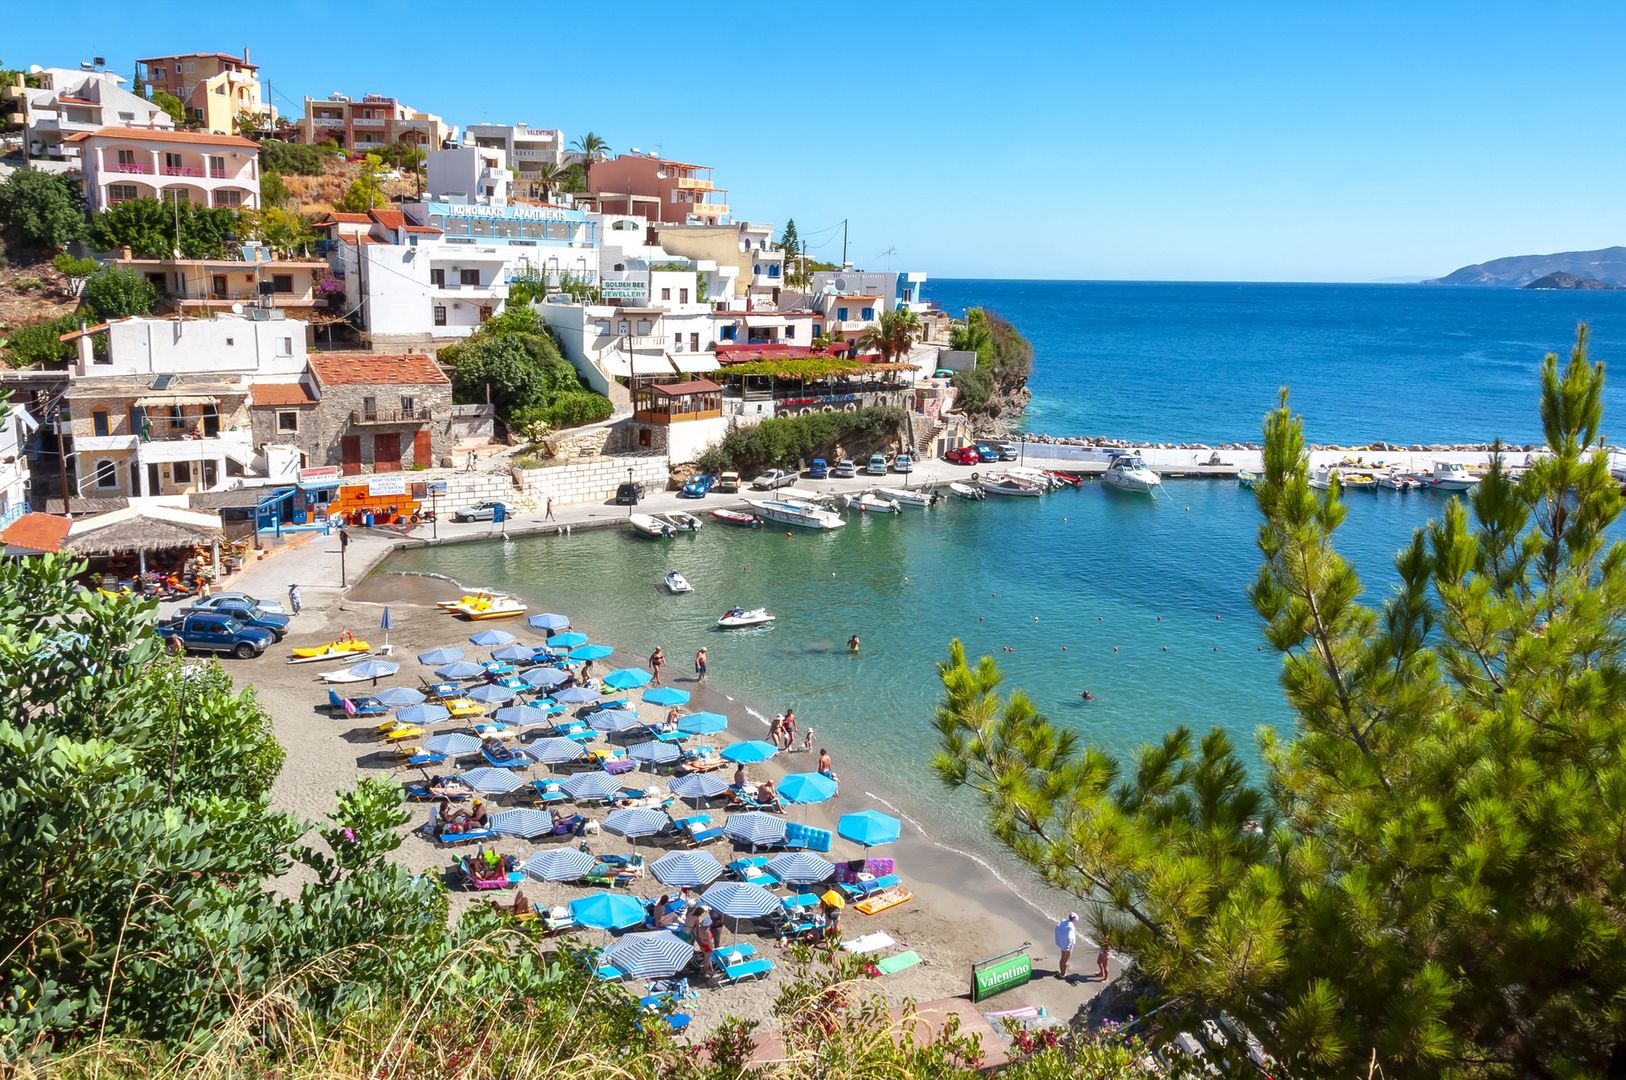 Una pesadilla durante las vacaciones en Creta.  El turista murió.  El cuerpo fue encontrado tomando el sol – O2